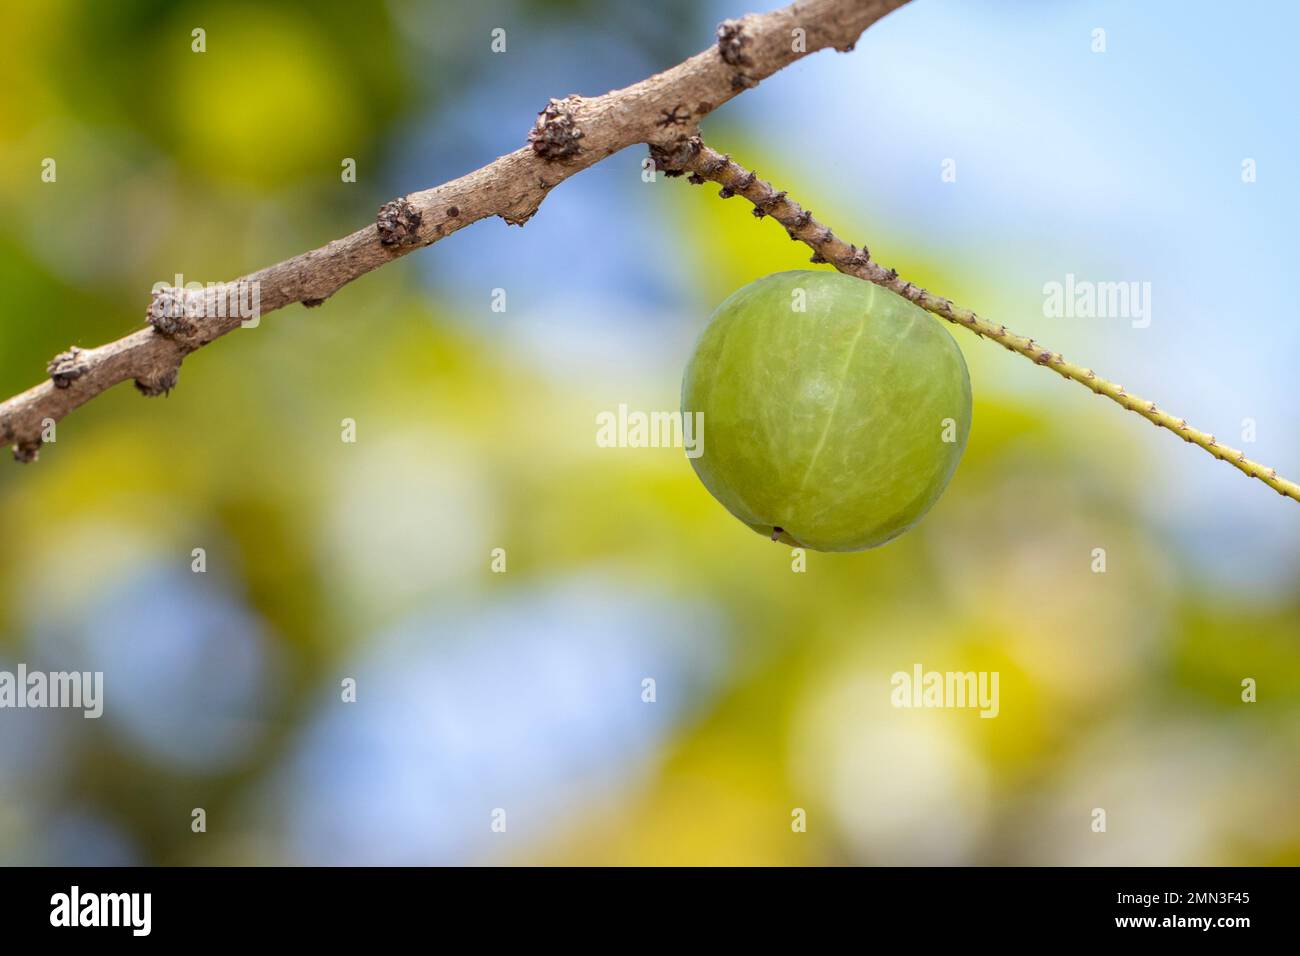 Image de la groseille indienne fraîche sur l'arbre. Les fruits verts qui sont riches en vitamines. Banque D'Images